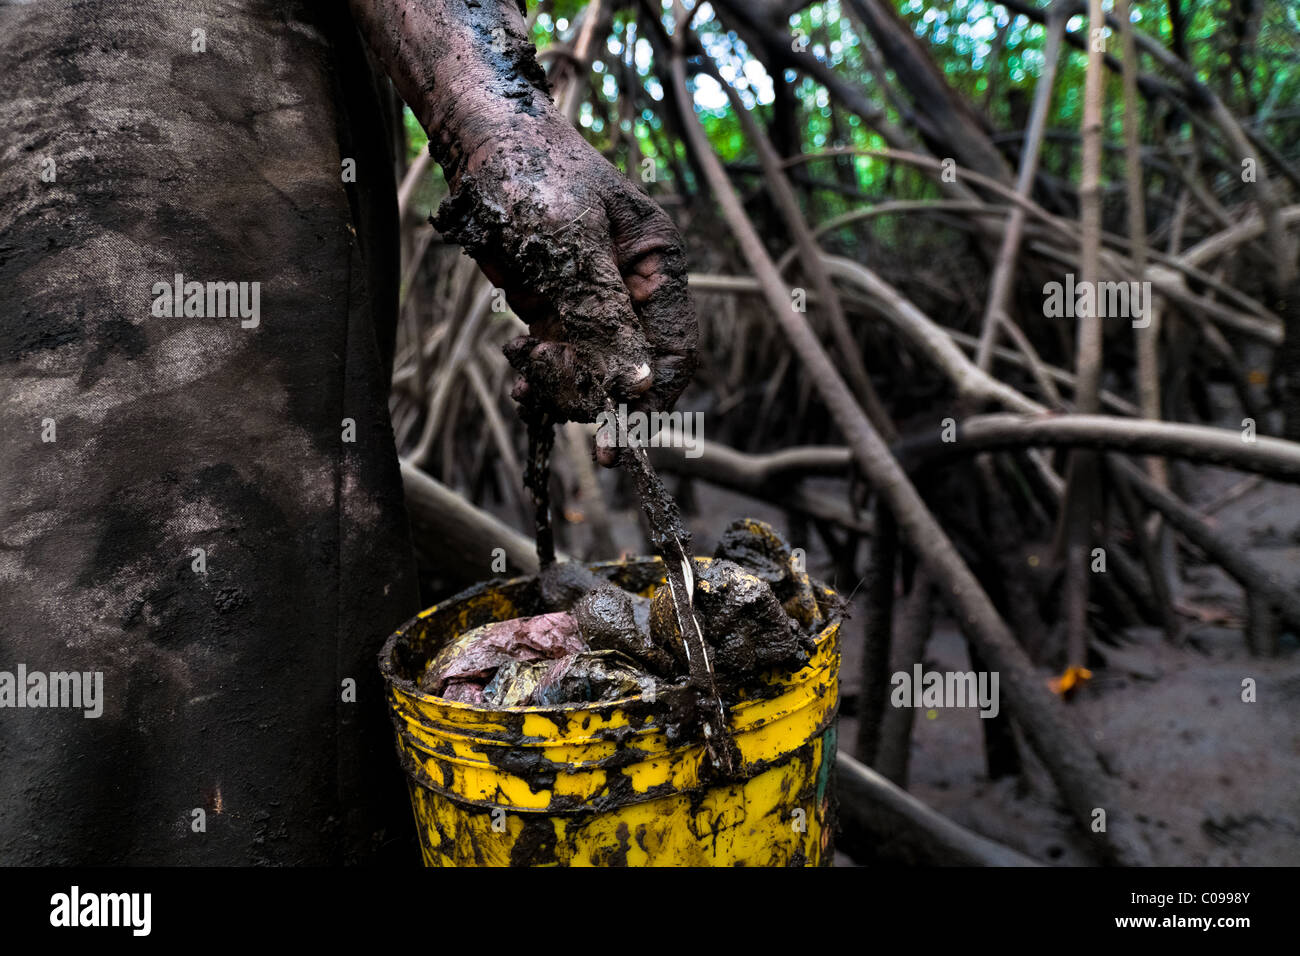 Eine kolumbianische Frau hält ein schlammiger Eimer von Schalentieren, gesammelt in den Mangrovensümpfen an der Pazifikküste Kolumbien gefüllt. Stockfoto